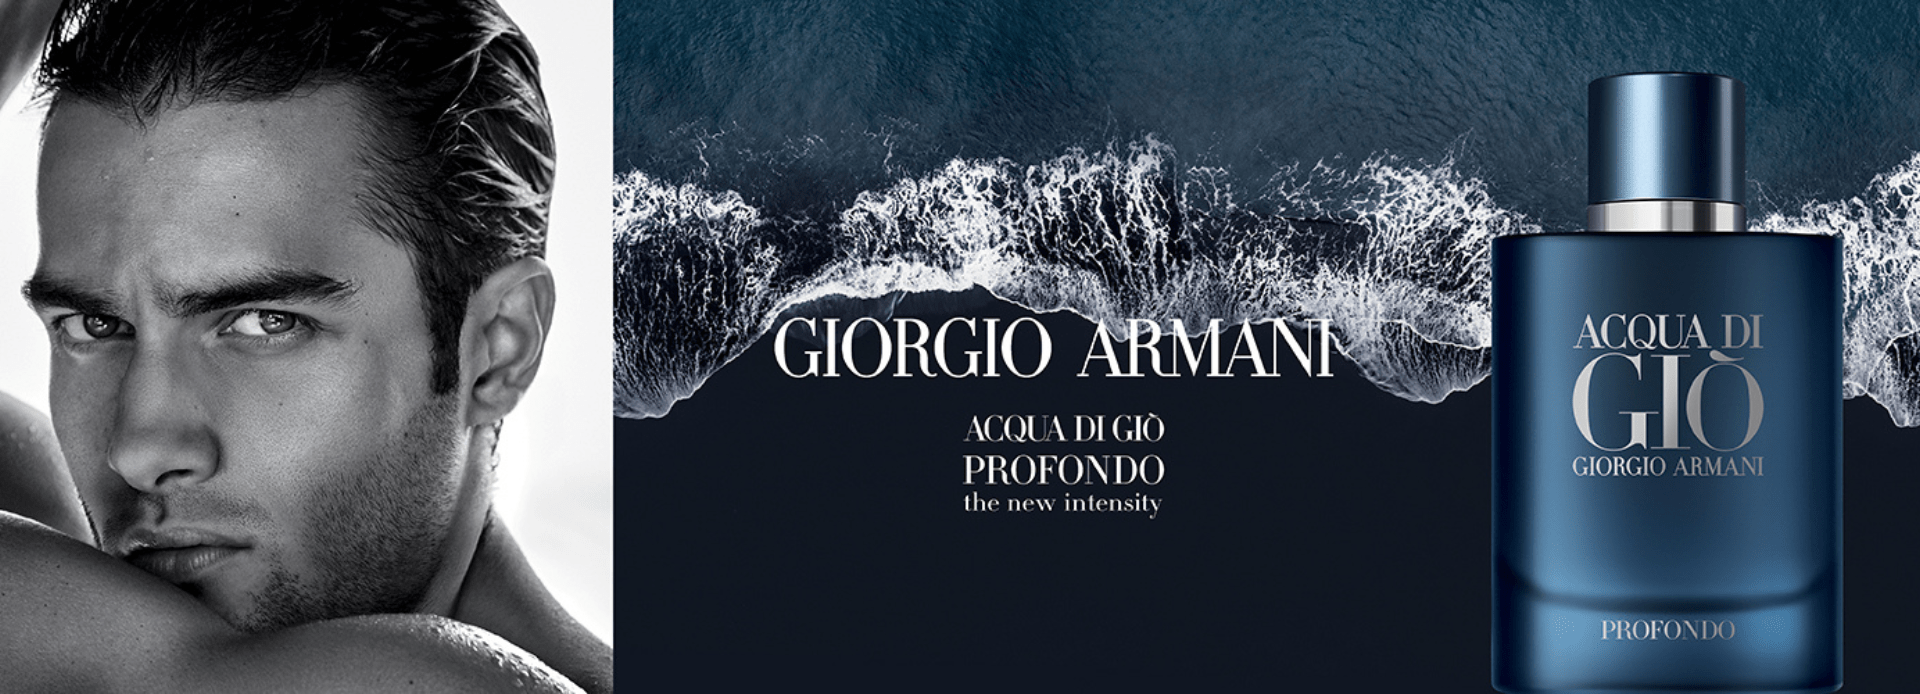 Giorgio armani - Exclusive Lines